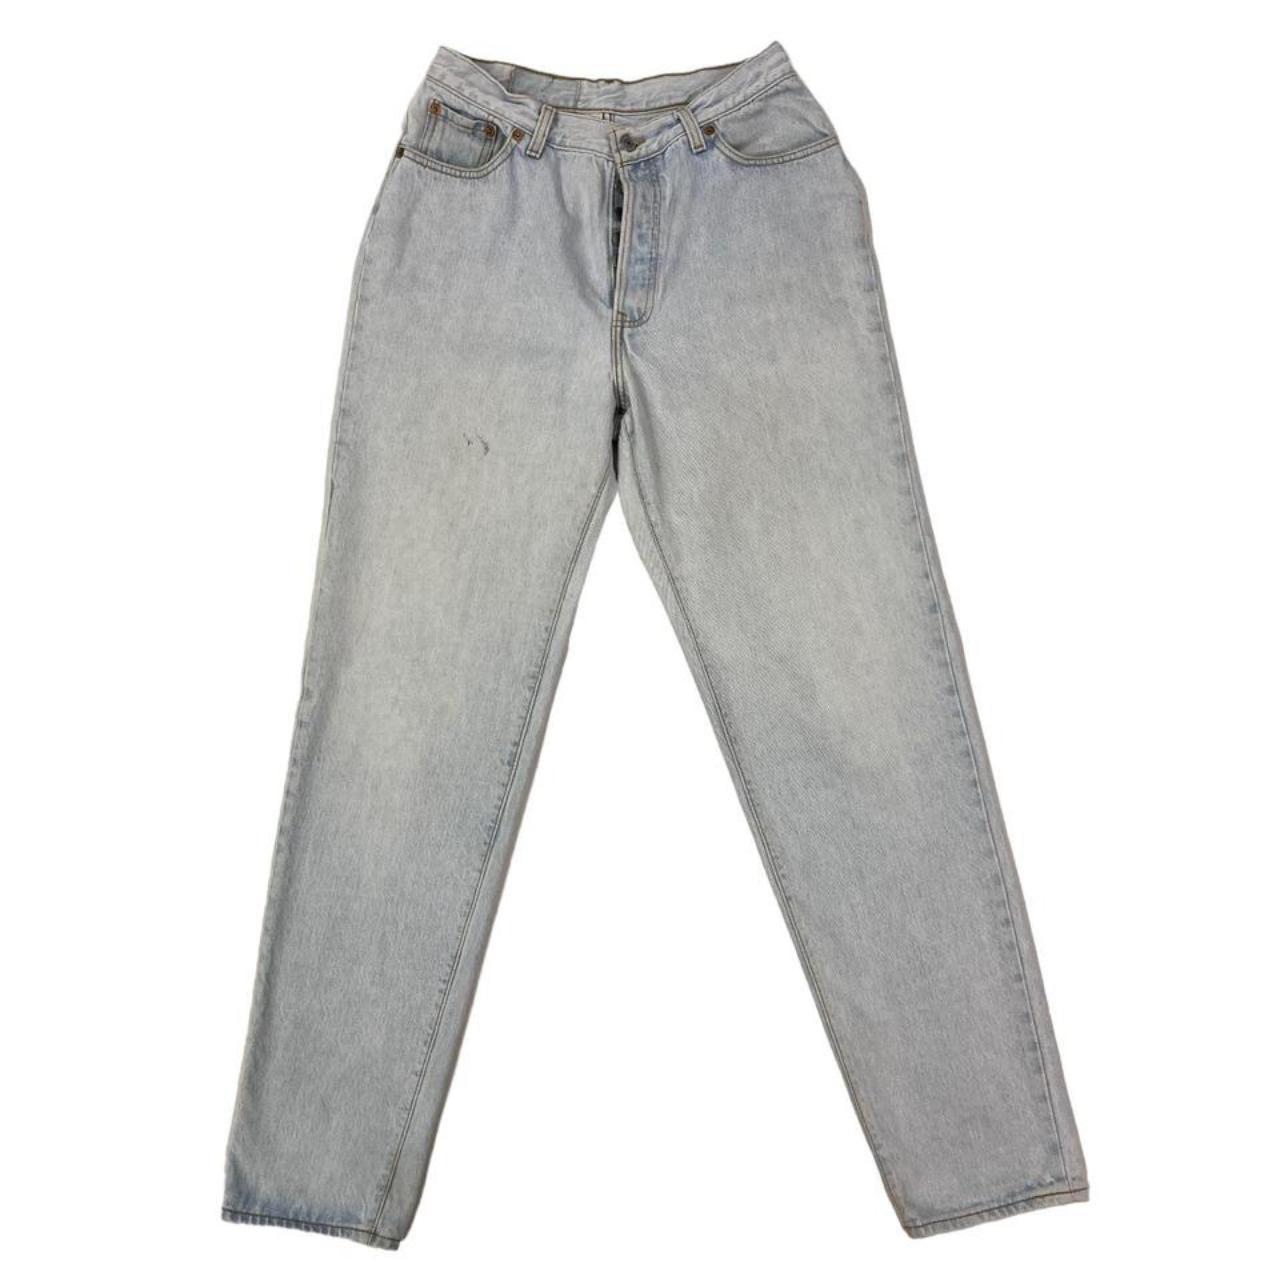 Levis 501 Jeans Vintage Made in USA Blue Regular... - Depop